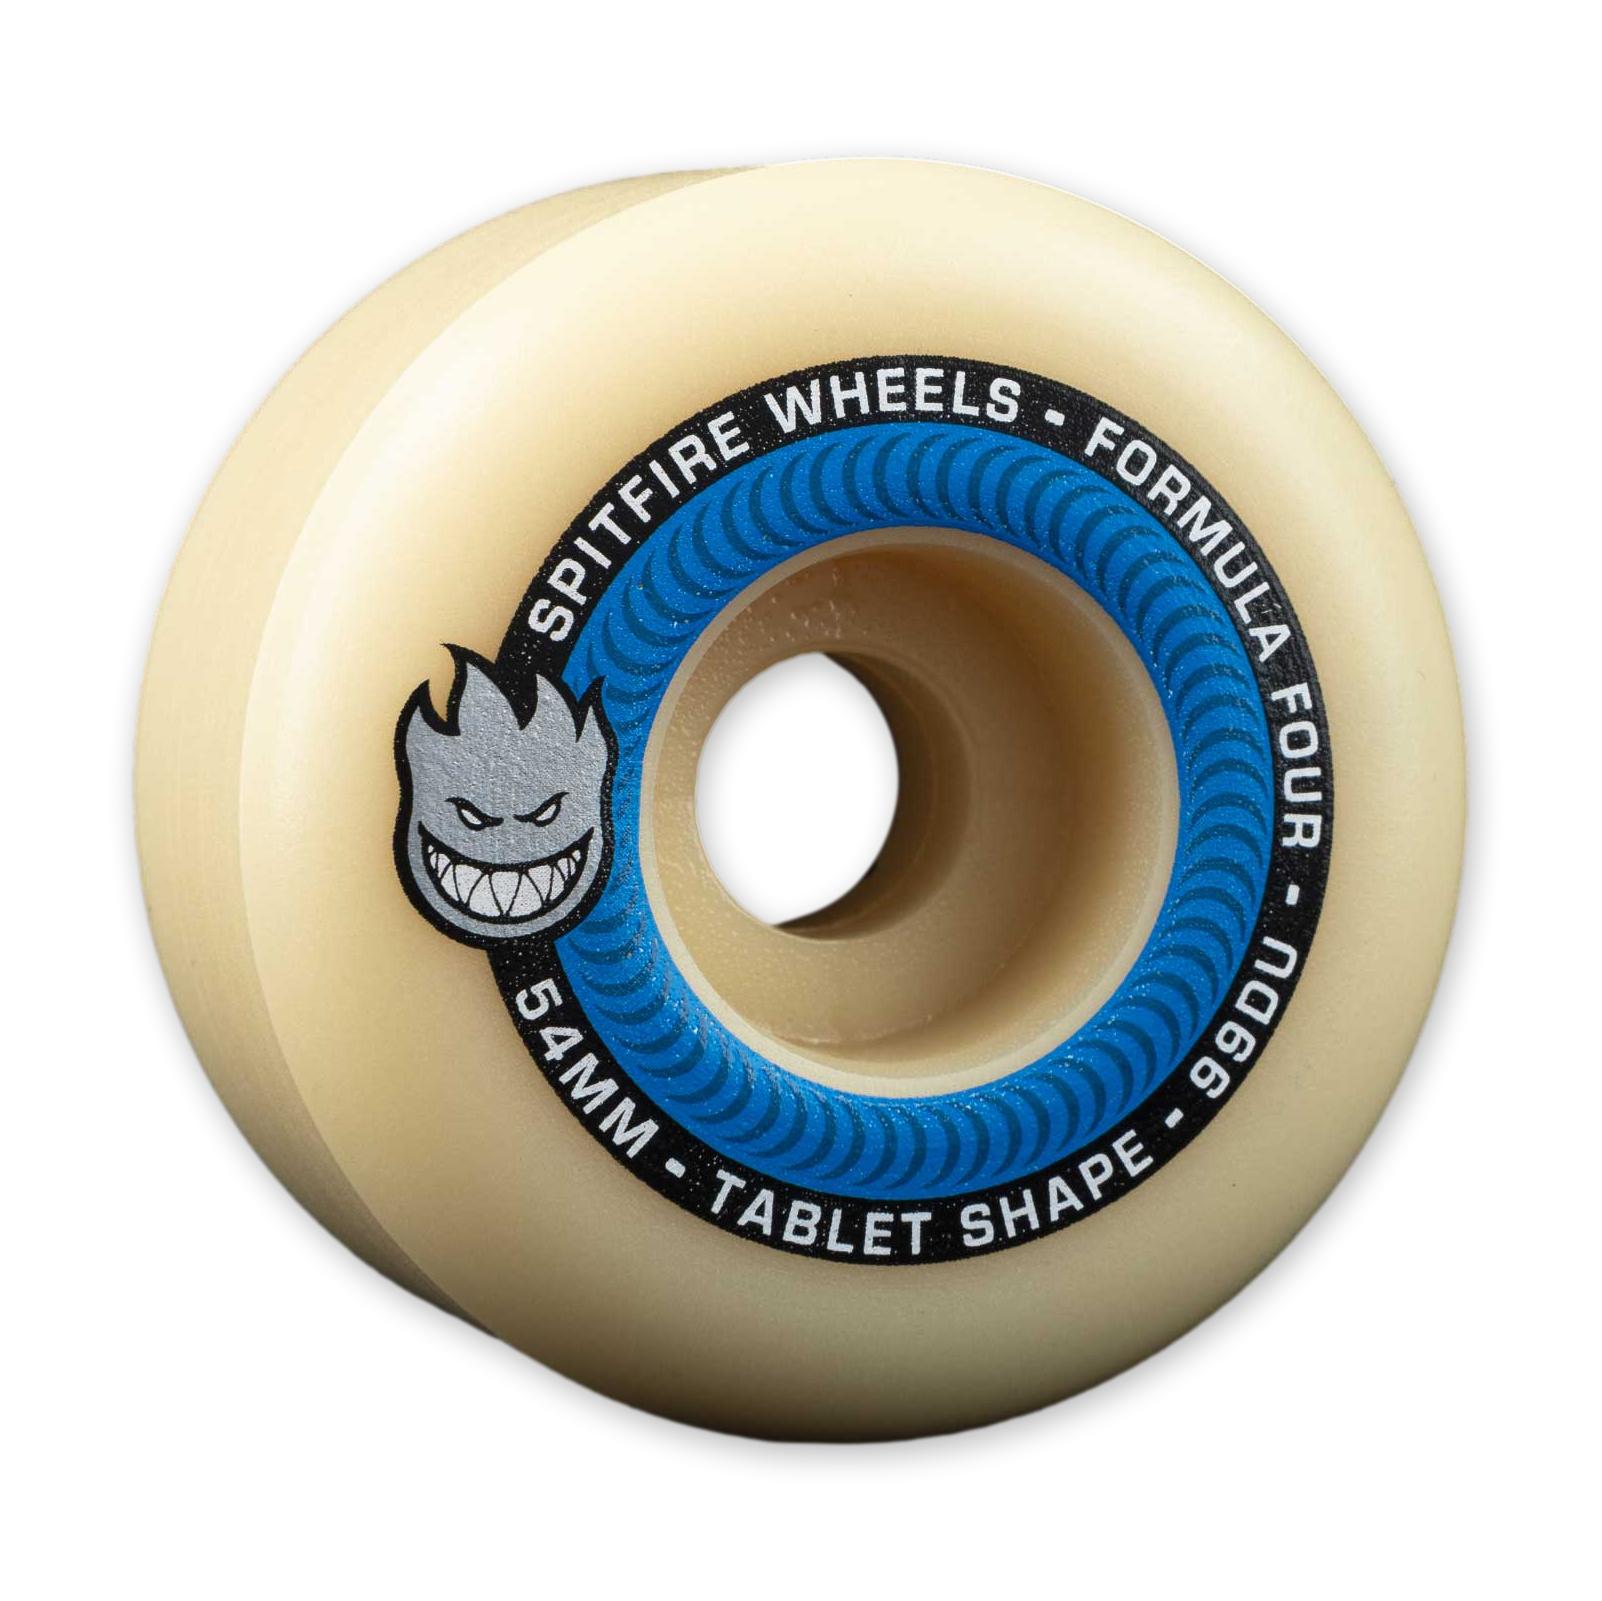 Spitfire Formula Four Tablet Skateboard Wheels, 99a